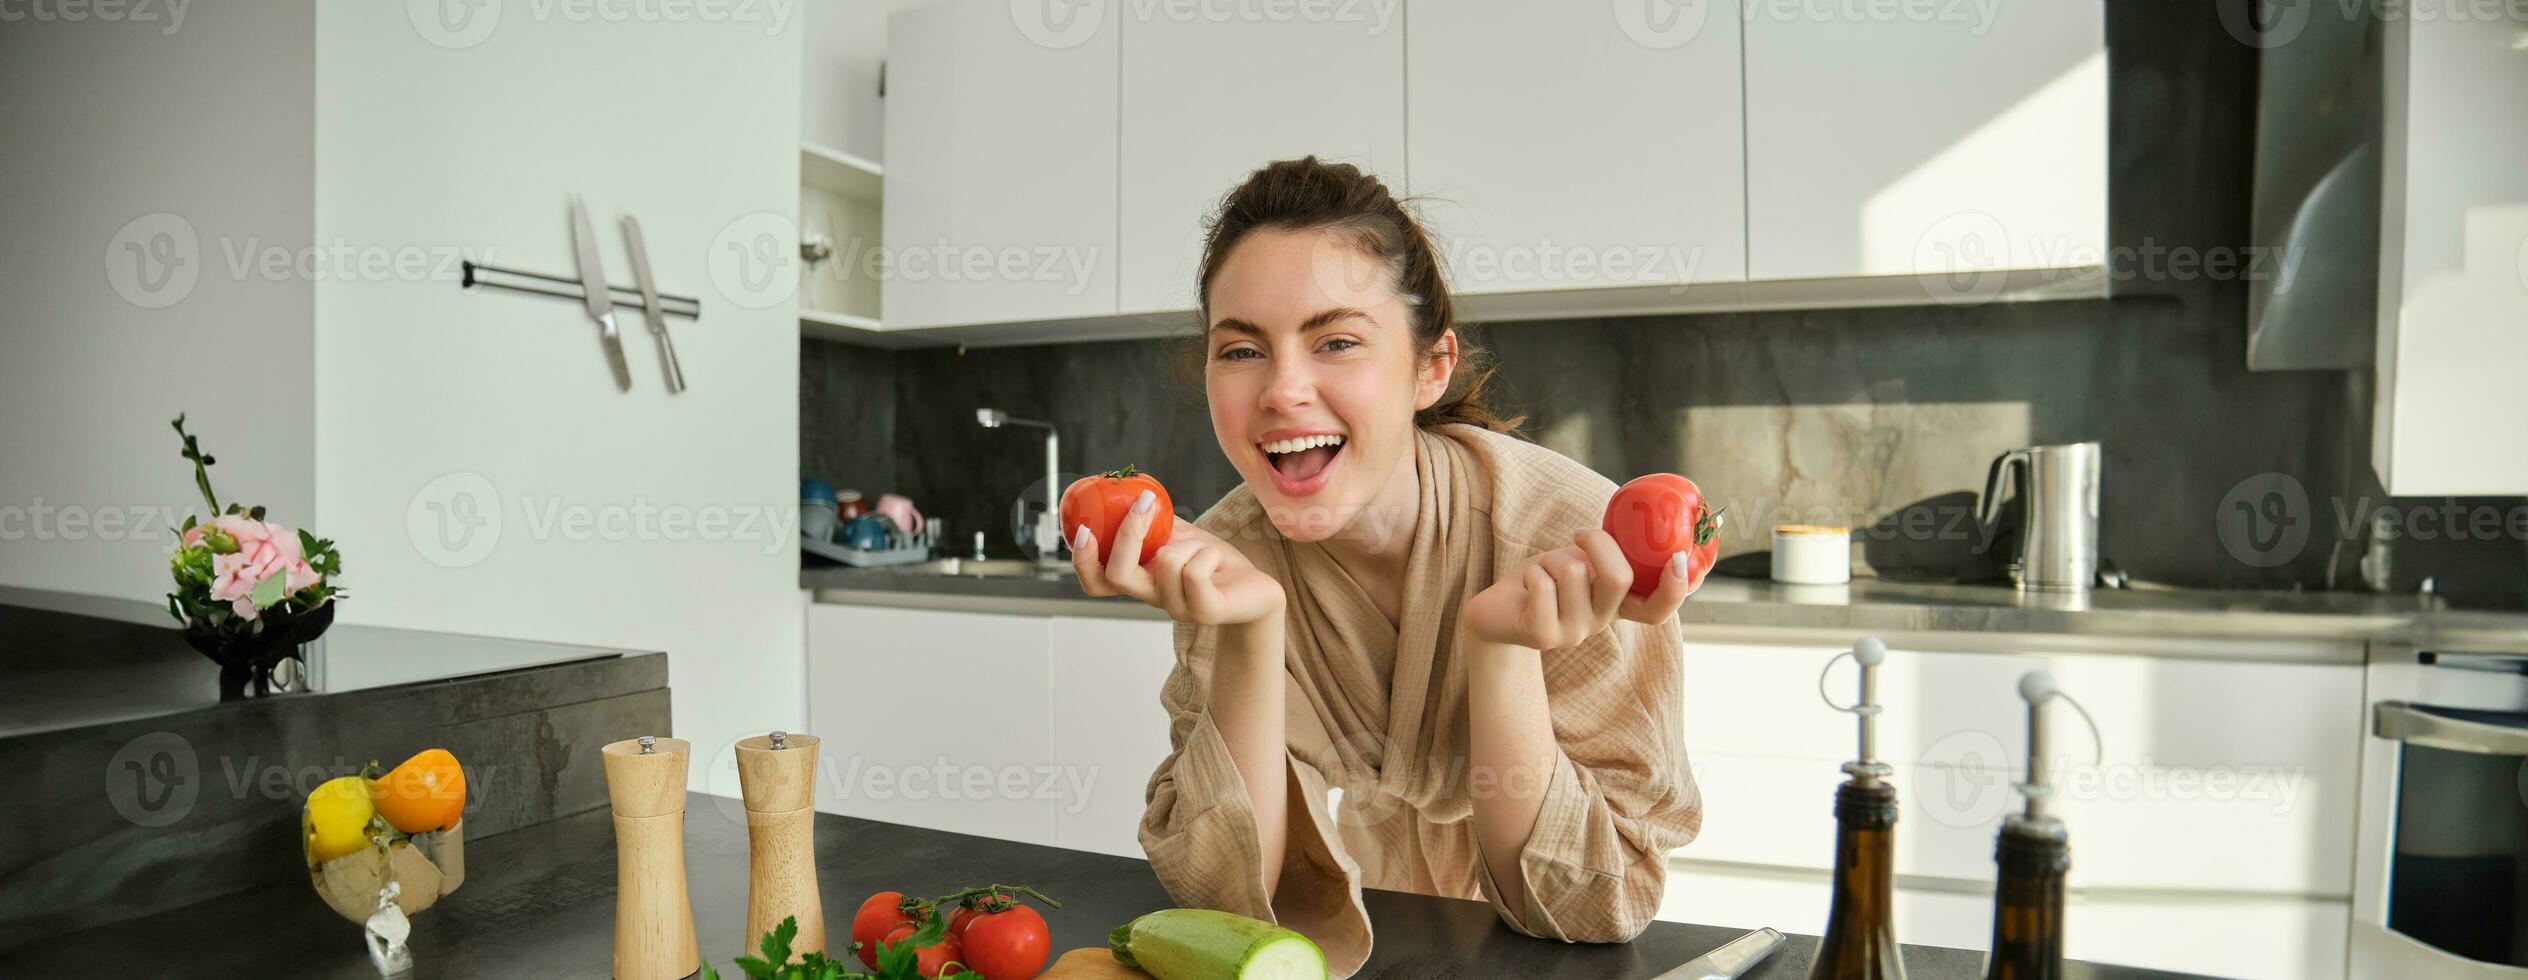 retrato do lindo mulher cozinhando dentro a cozinha, cortar legumes em quadro, segurando tomates, conduzir saudável estilo de vida com preparando fresco saladas, vegano refeições foto